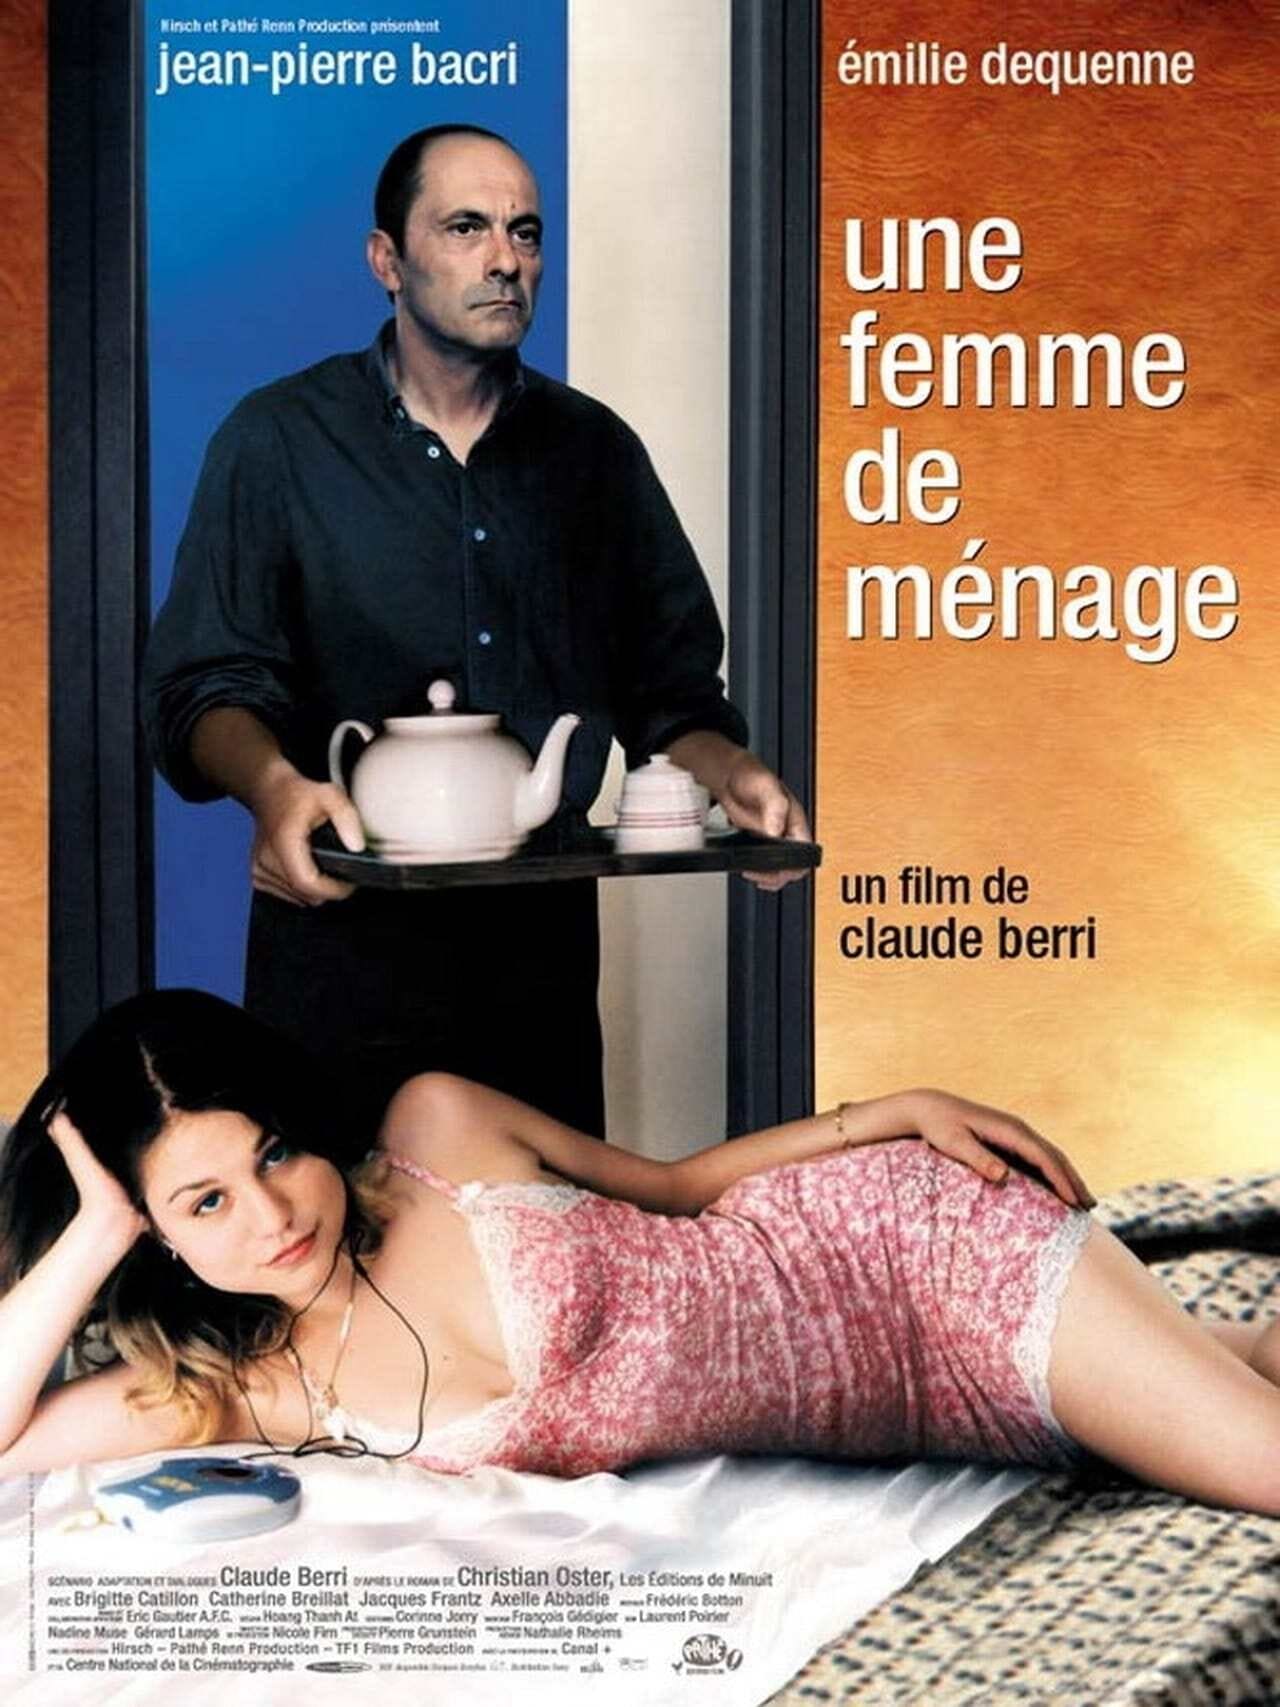 The Housekeeper (2002)